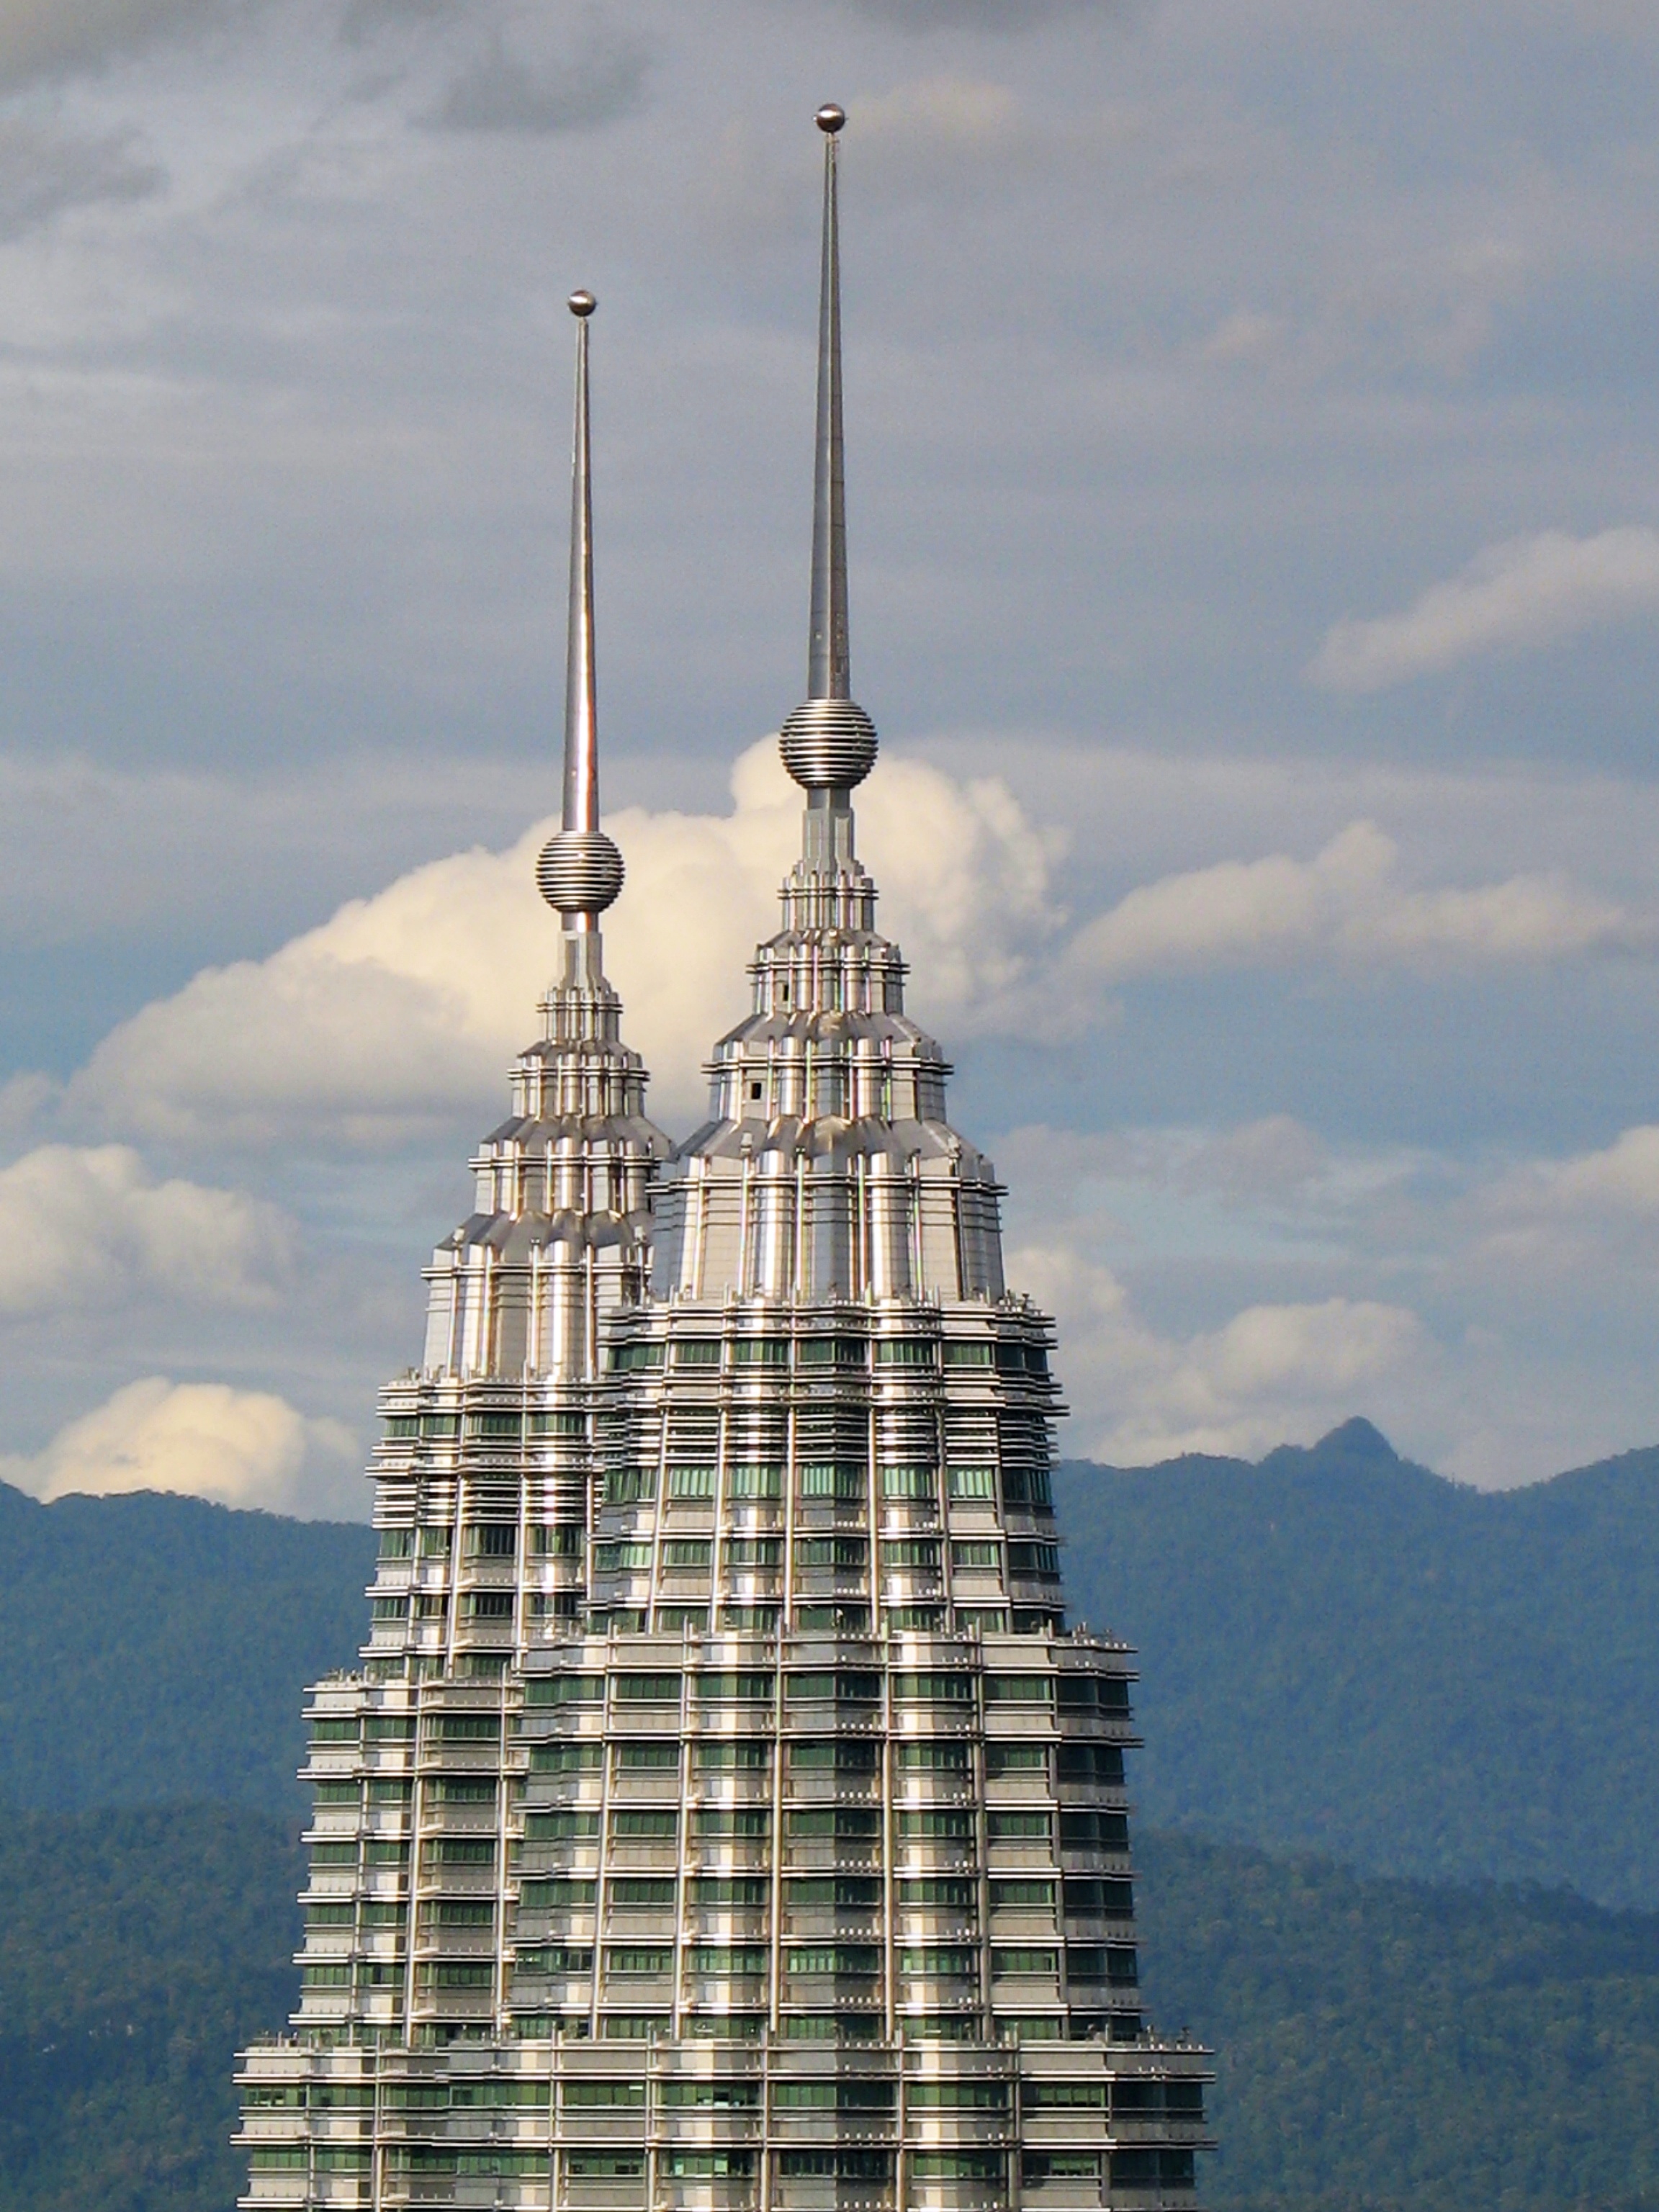 File:Kuala Lumpur, Petronas Twin Towers, the top ...